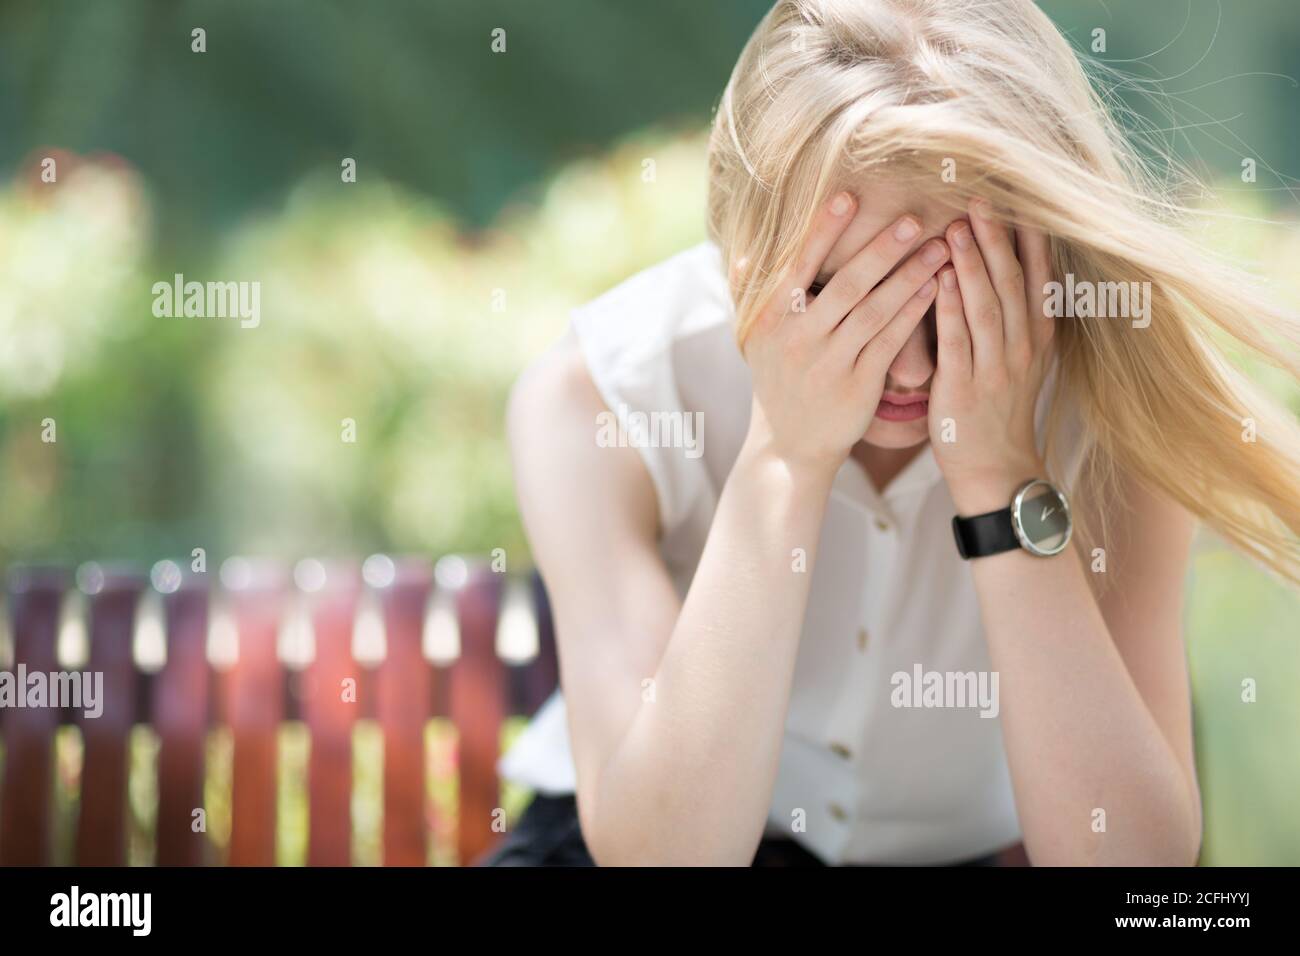 Ansia e depressione. Triste giovane donna in dolore piangendo e coprendo il suo volto mentre si siede da sola su una panchina del parco in una giornata di sole. Foto Stock